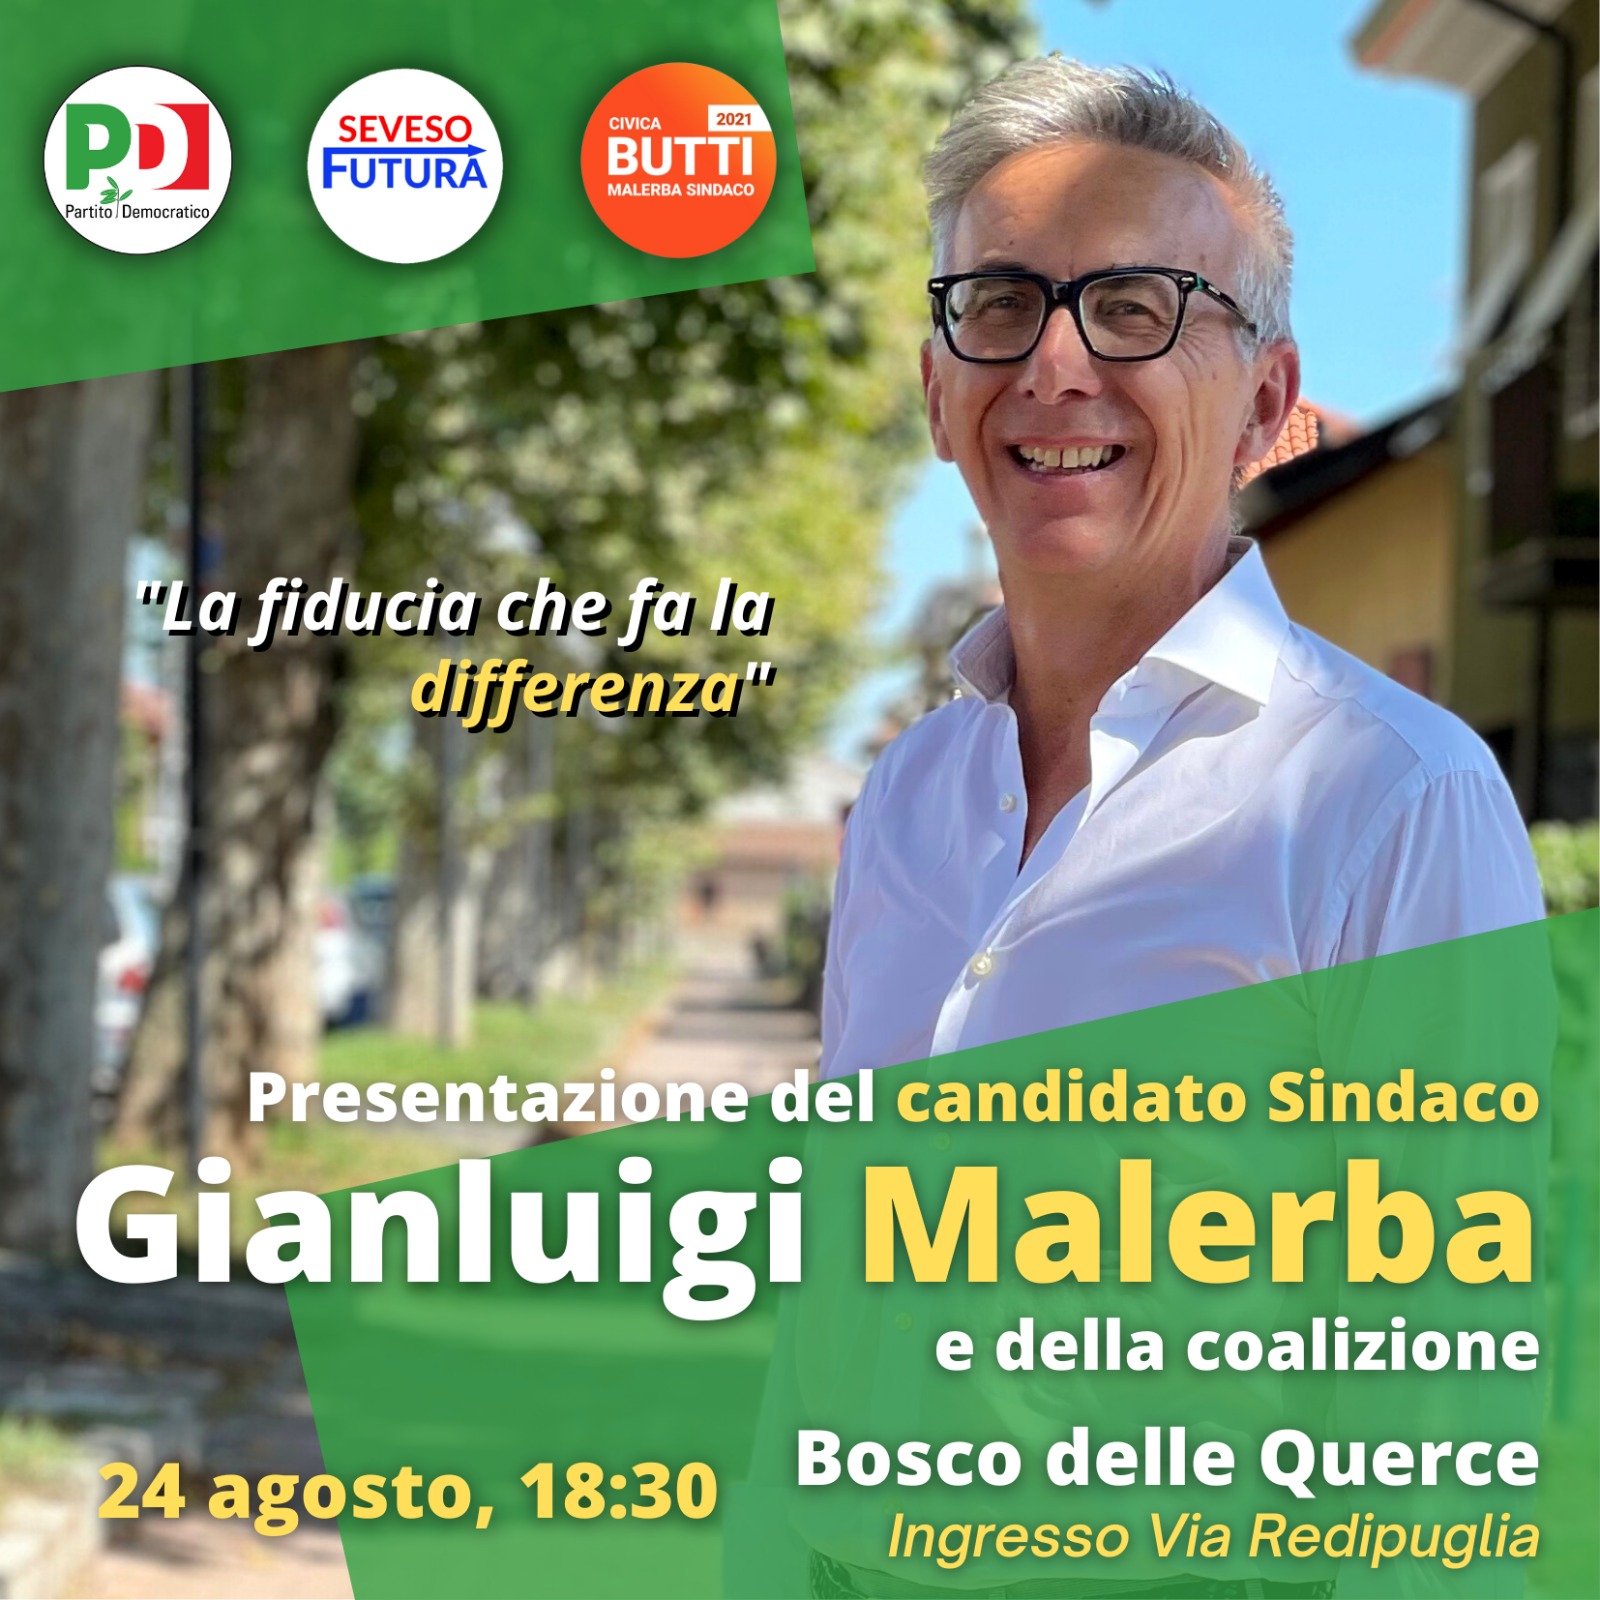 Gianluigi Malerba presentazione 24 agosto 2021